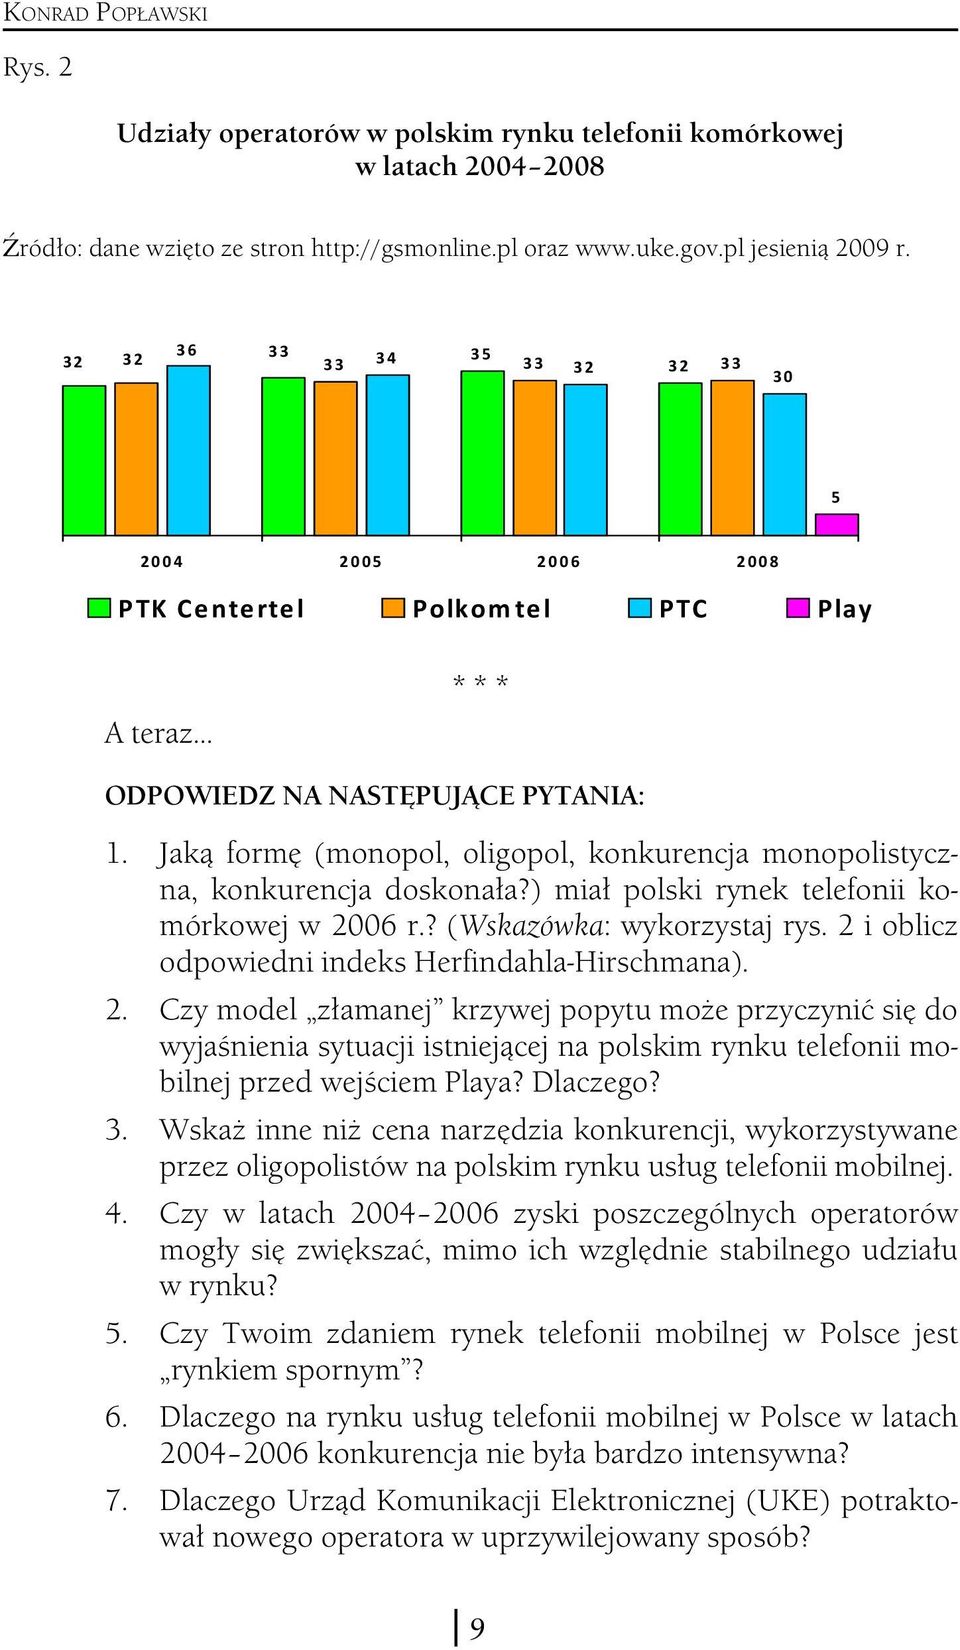 Jaką formę (monopol, oligopol, konkurencja monopolistyczna, konkurencja doskonała?) miał polski rynek telefonii komórkowej w 2006 r.? (Wskazówka: wykorzystaj rys.